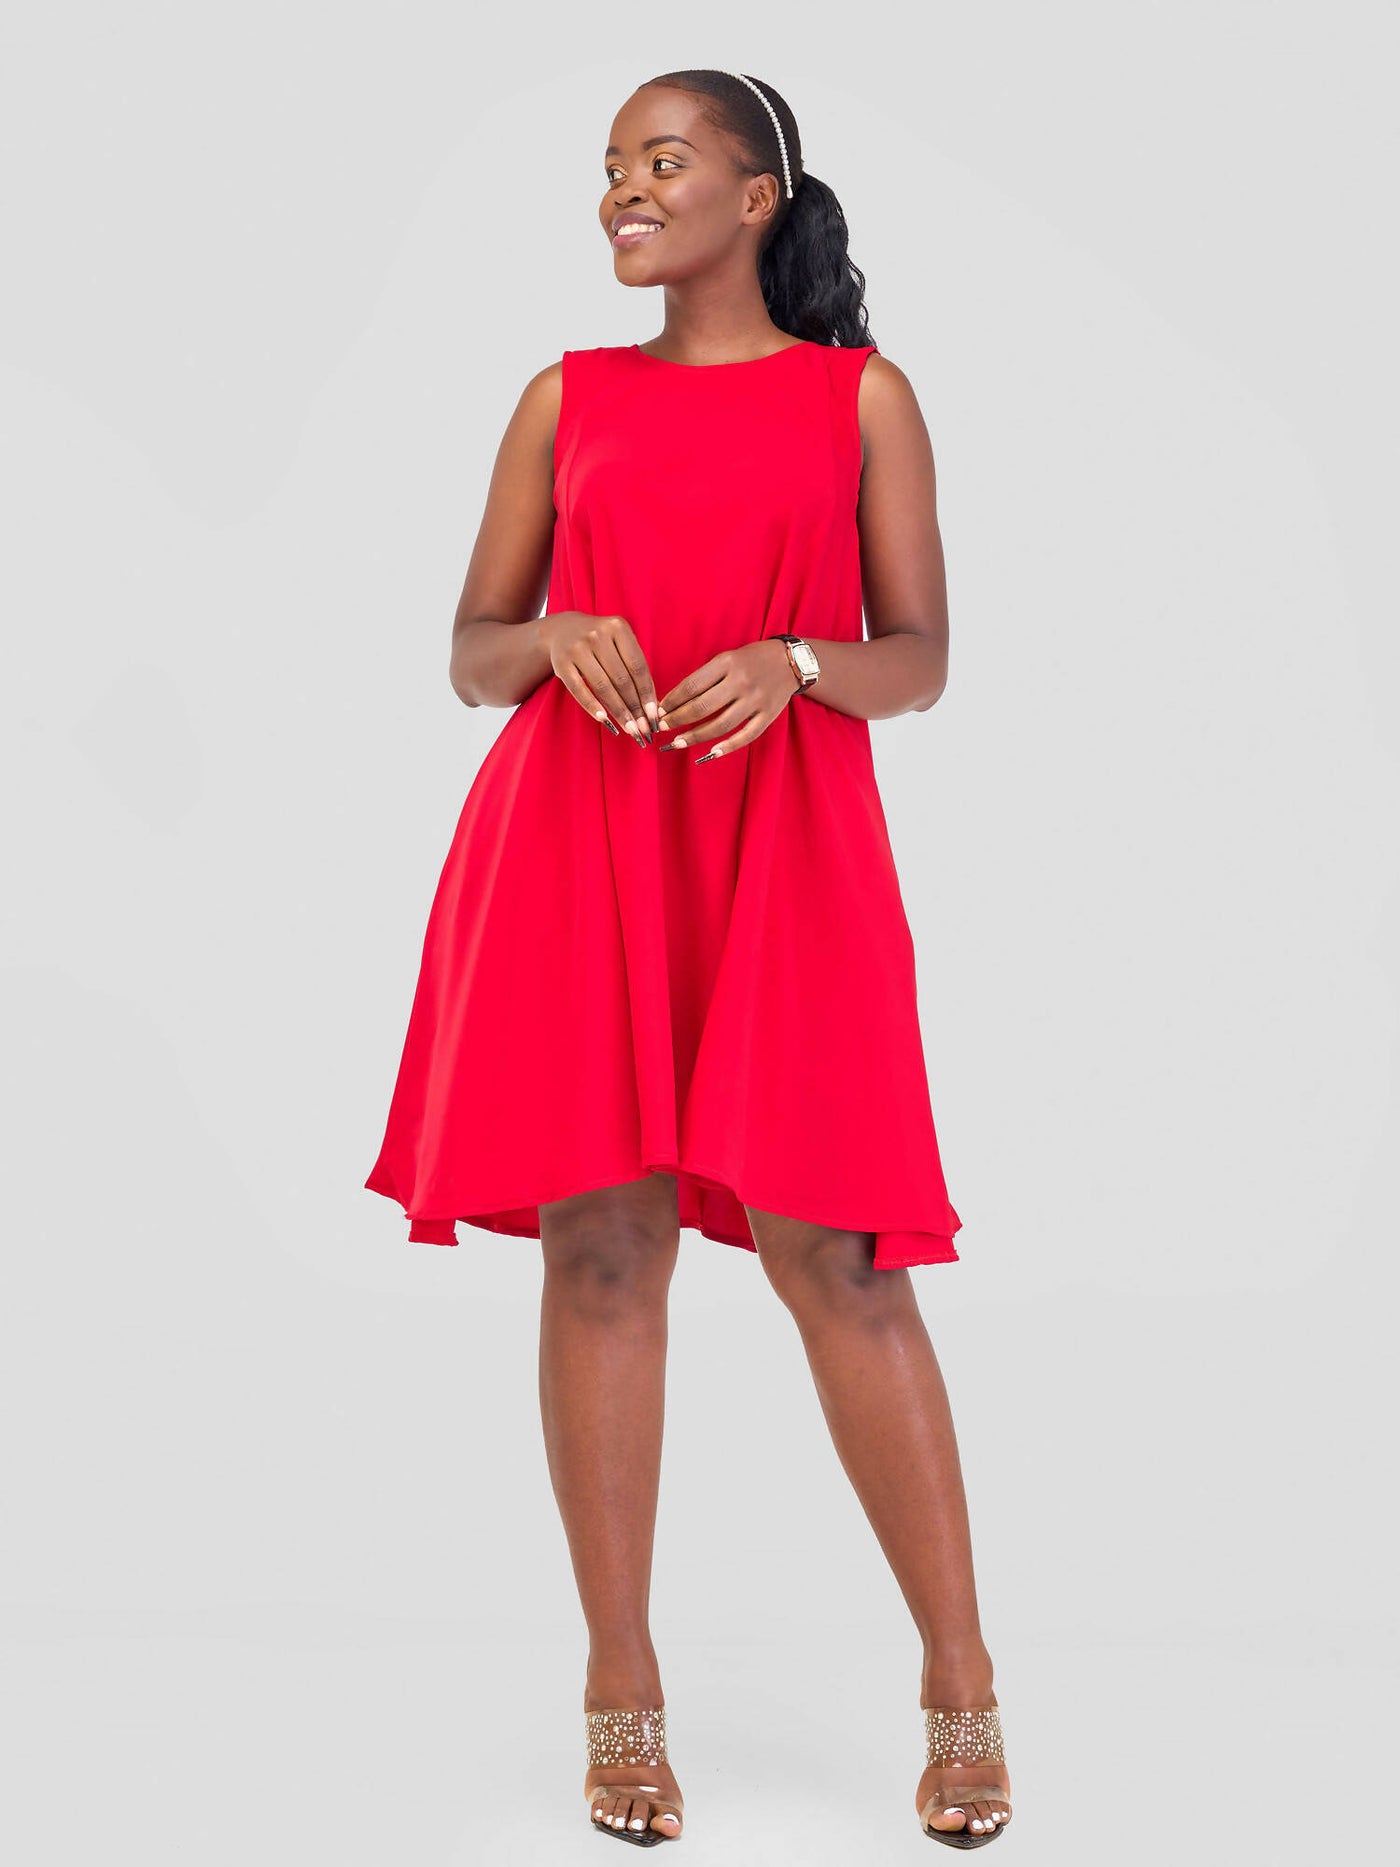 Mnubistyle Sekina Dress - Red